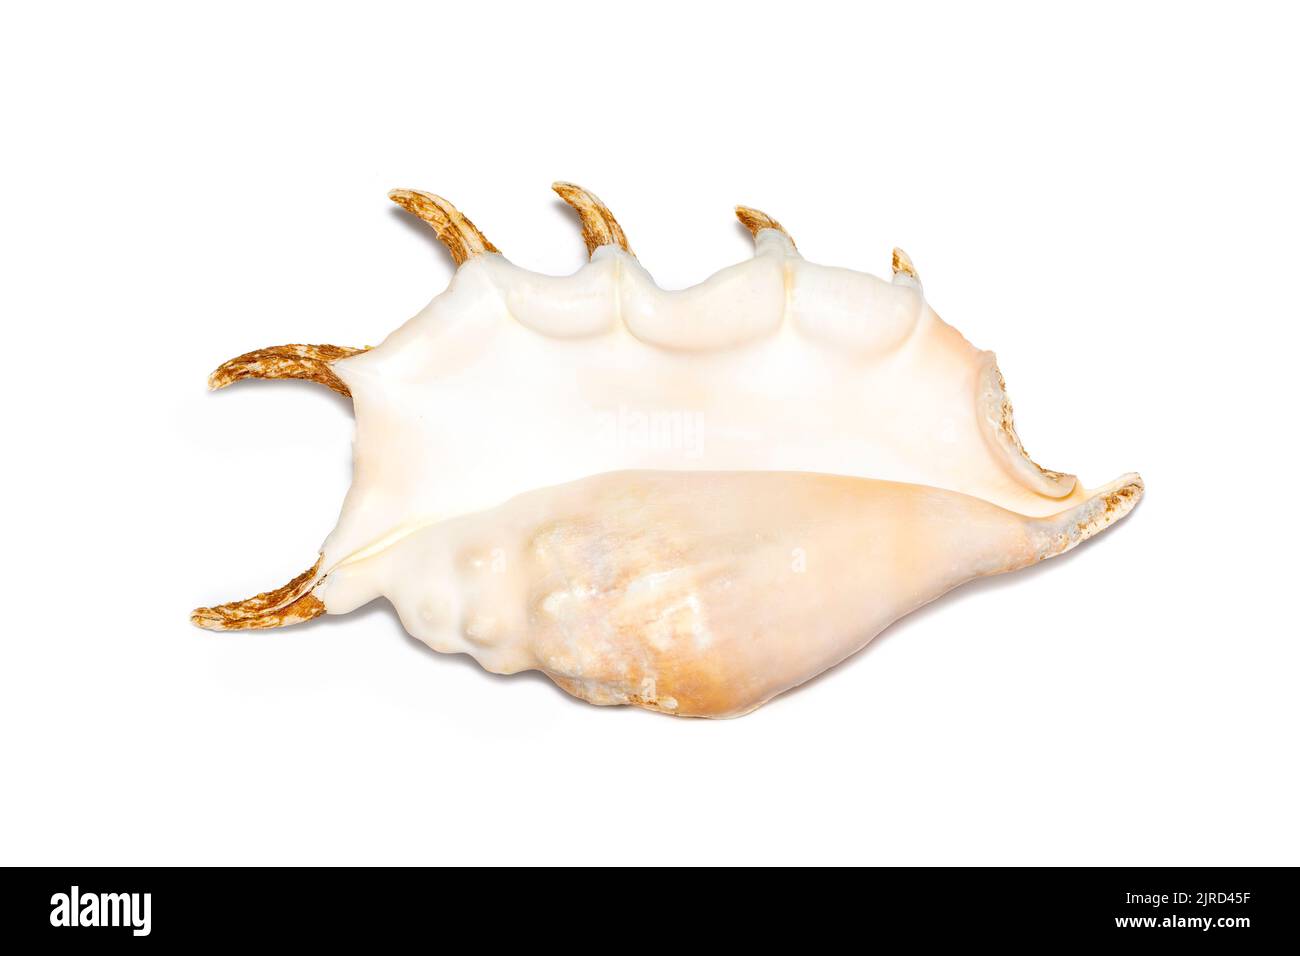 Immagine della conchiglia ragno (Lambis truncata) su sfondo bianco. Conchiglie marine. Animali sottomarini. Foto Stock